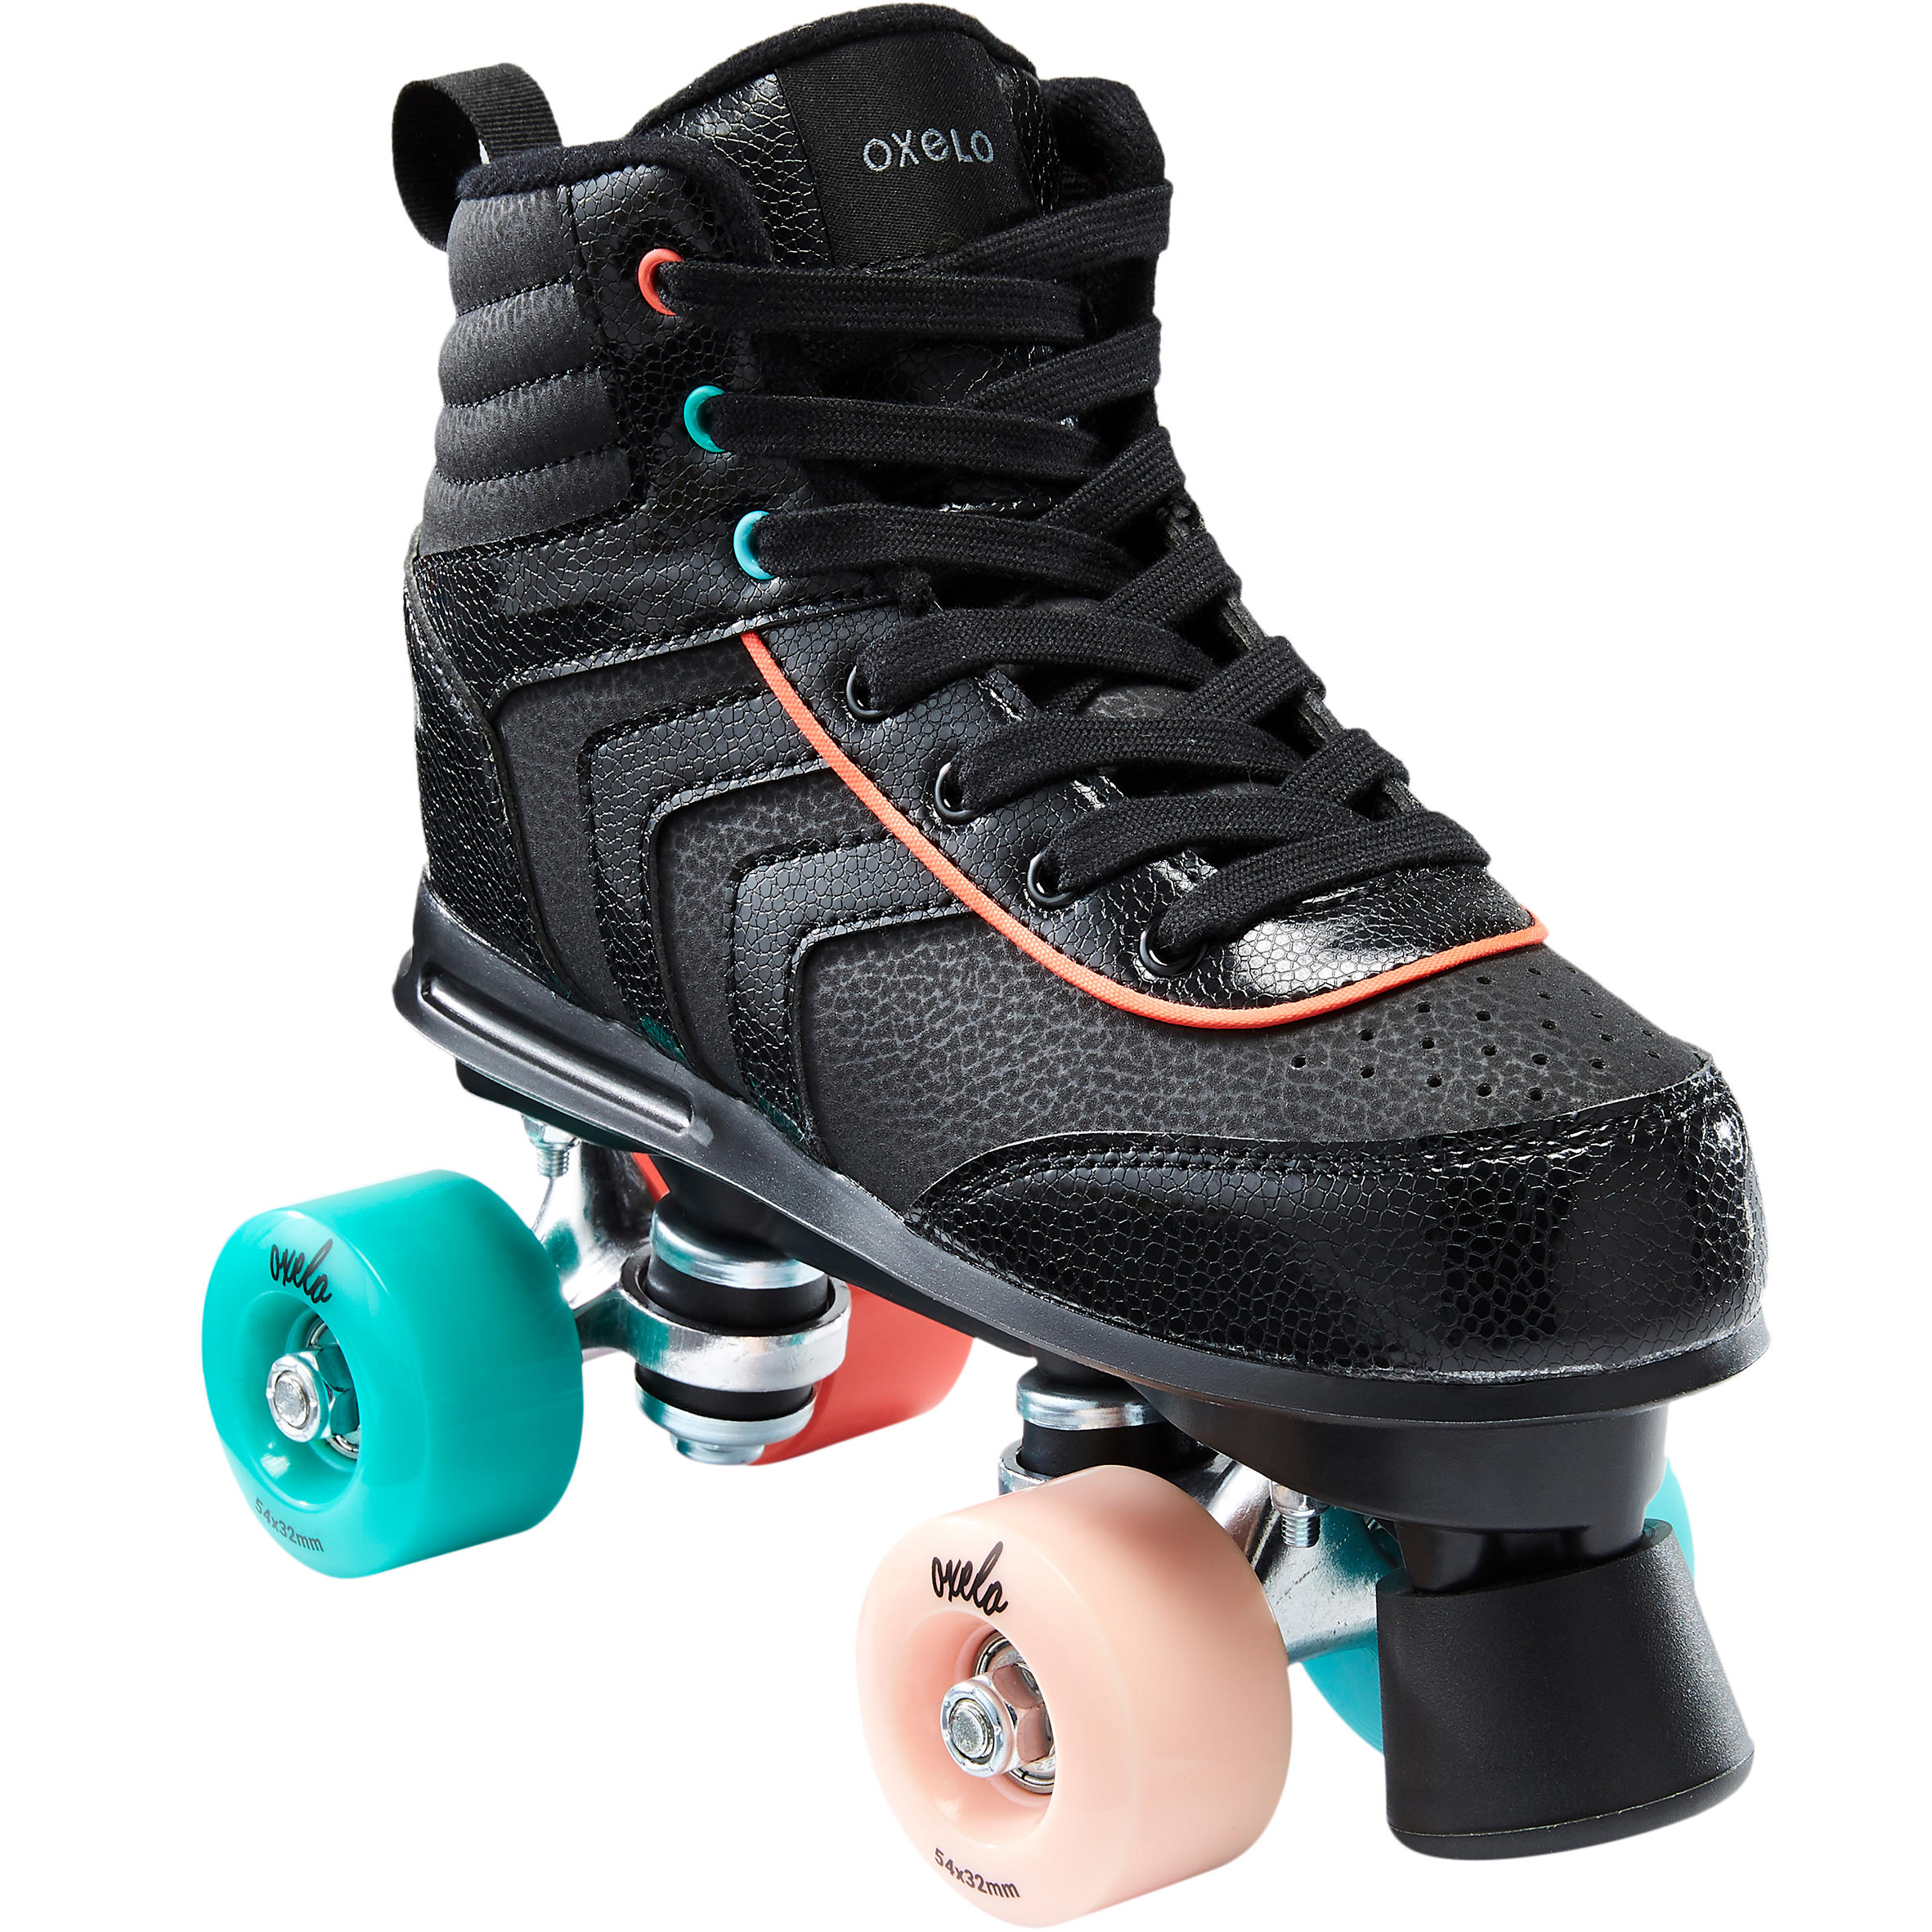 Kids Quad Roller Skates Buy Online at 